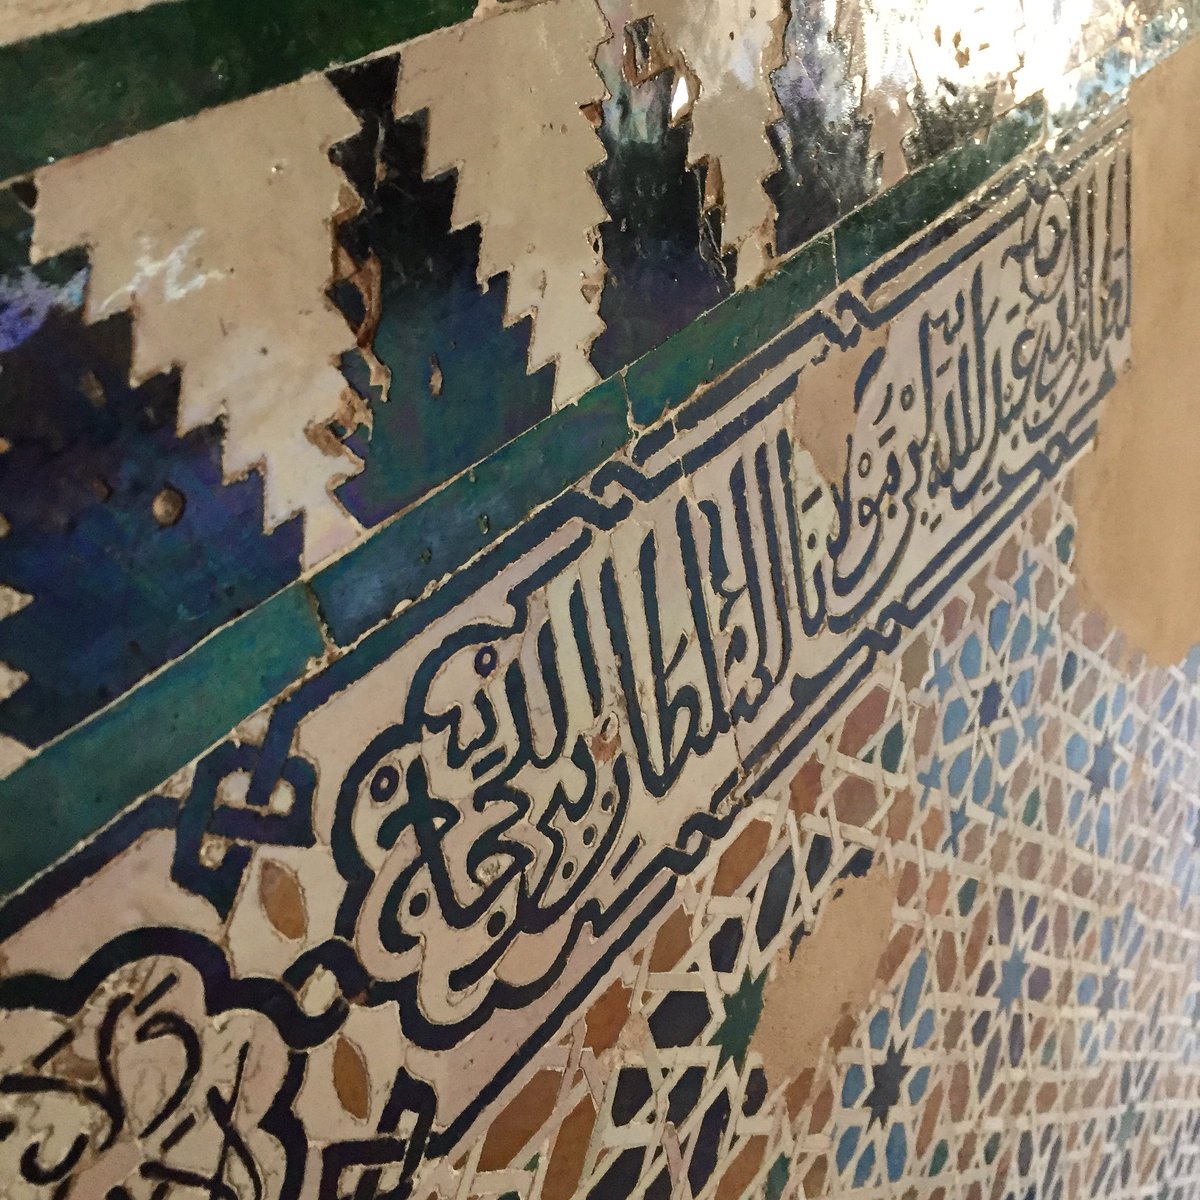 Por fin! Impresionada en la visita #Alhambra #Granada @alhambracultura @MuseoAlhambra #Generalife #PalaciosNazaries #PalacioCarlosV #mocarabes #teselas #epigrafes #jardines #albercas #agua #patios